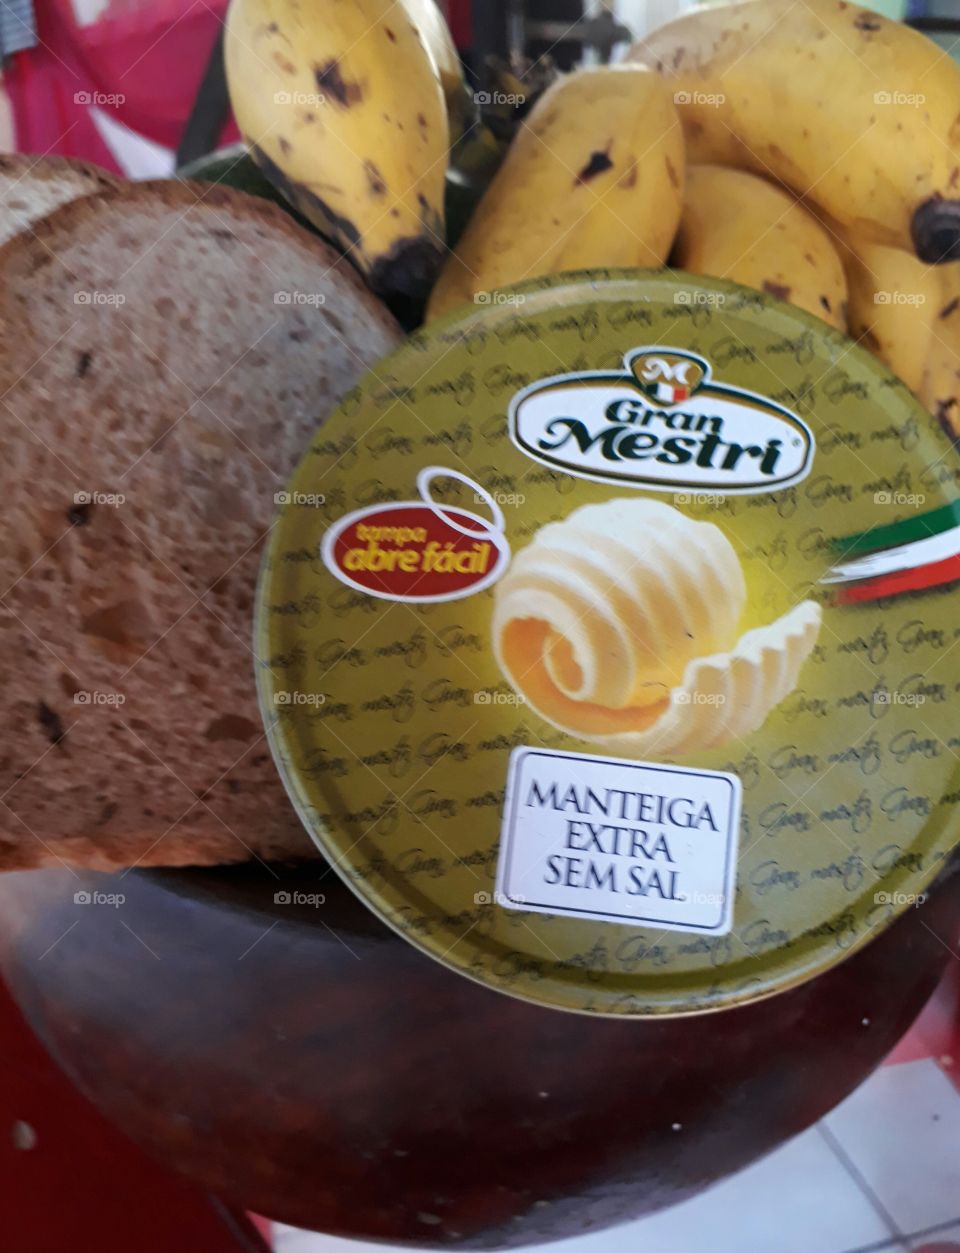 Gran Mestri manteiga extra sem sal, alta gastronomia desenvolvidas pelas maos de mestres italianos, primeira manteiga com embalagem em lata e abre facil do Brasil.